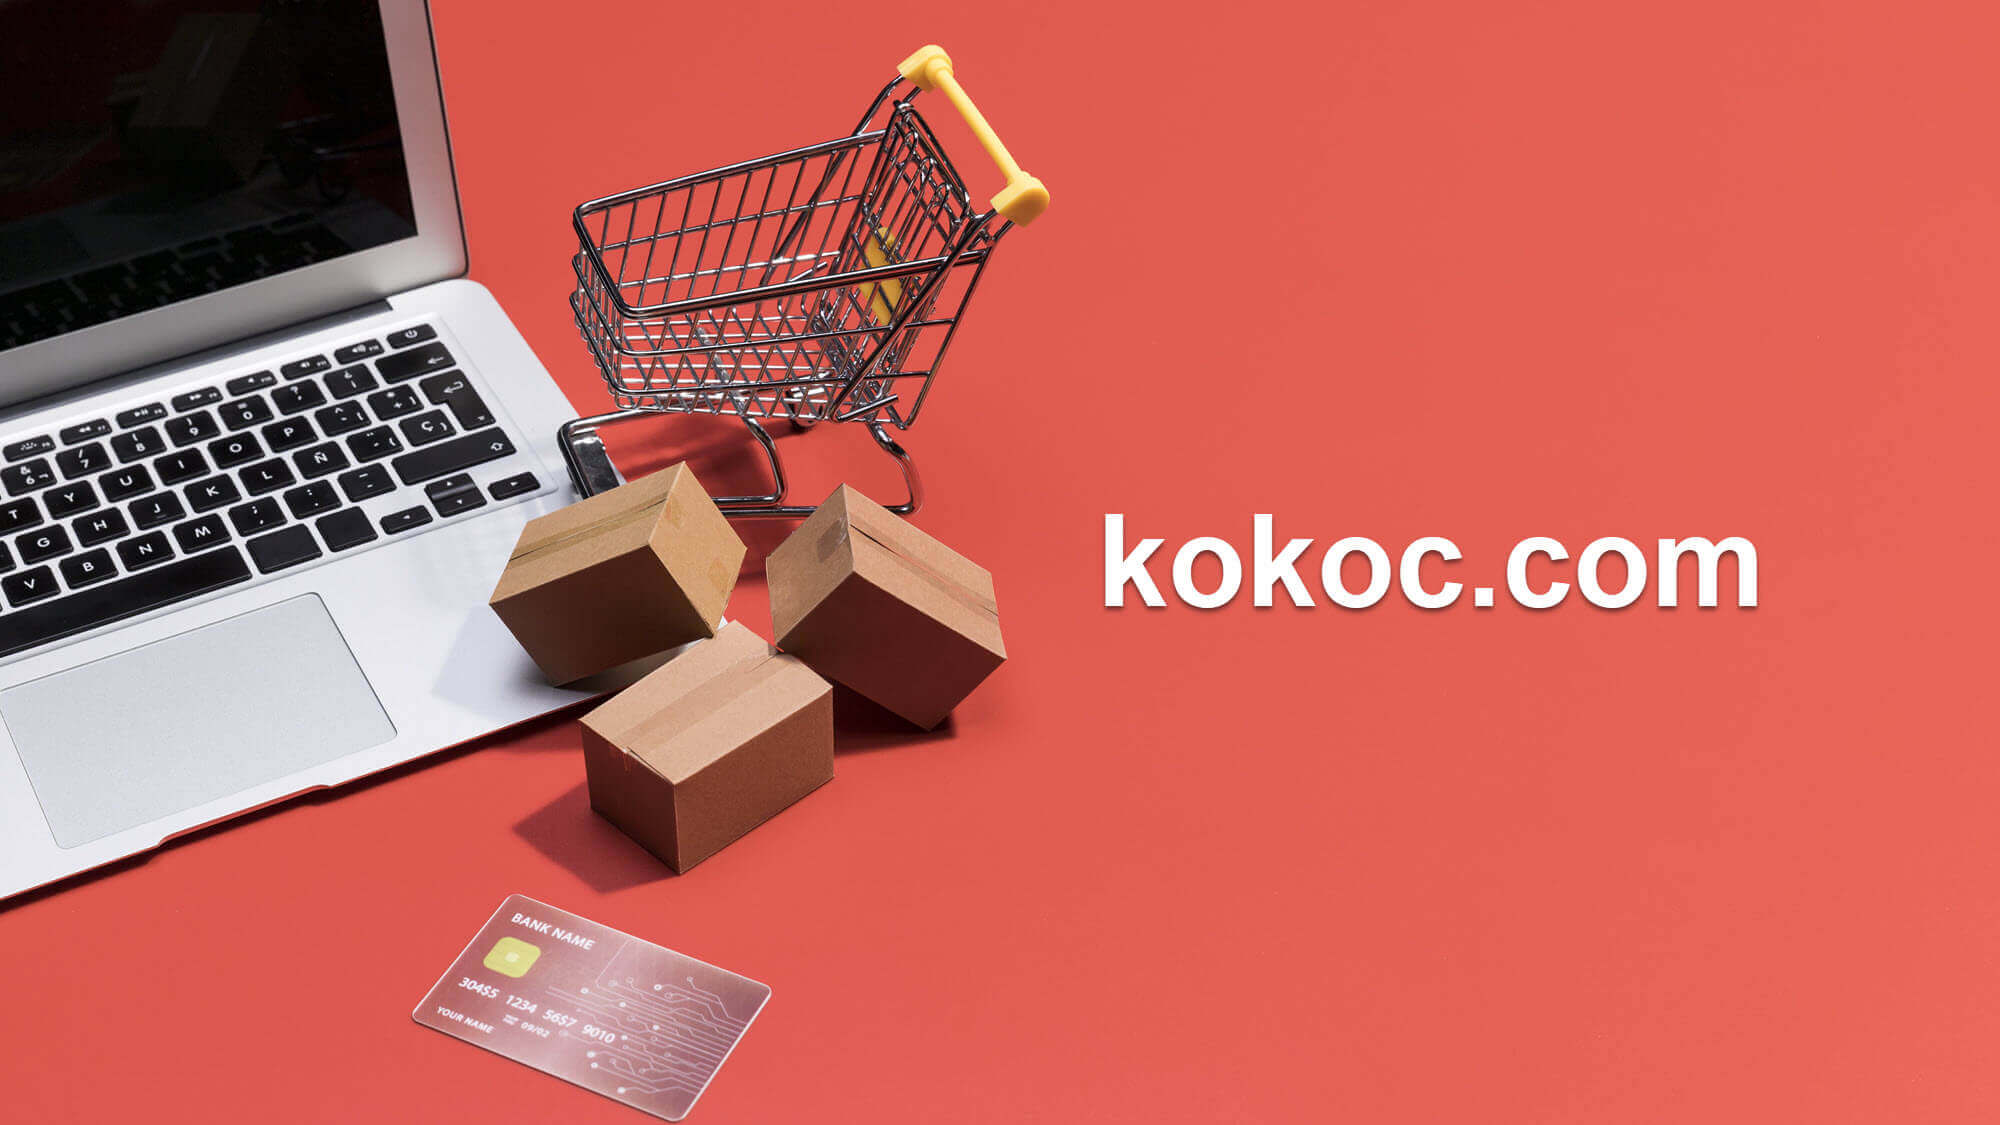 Kokoc.com: топовая корпорация по продвижению сайтов и магазинов на маркетплейсах